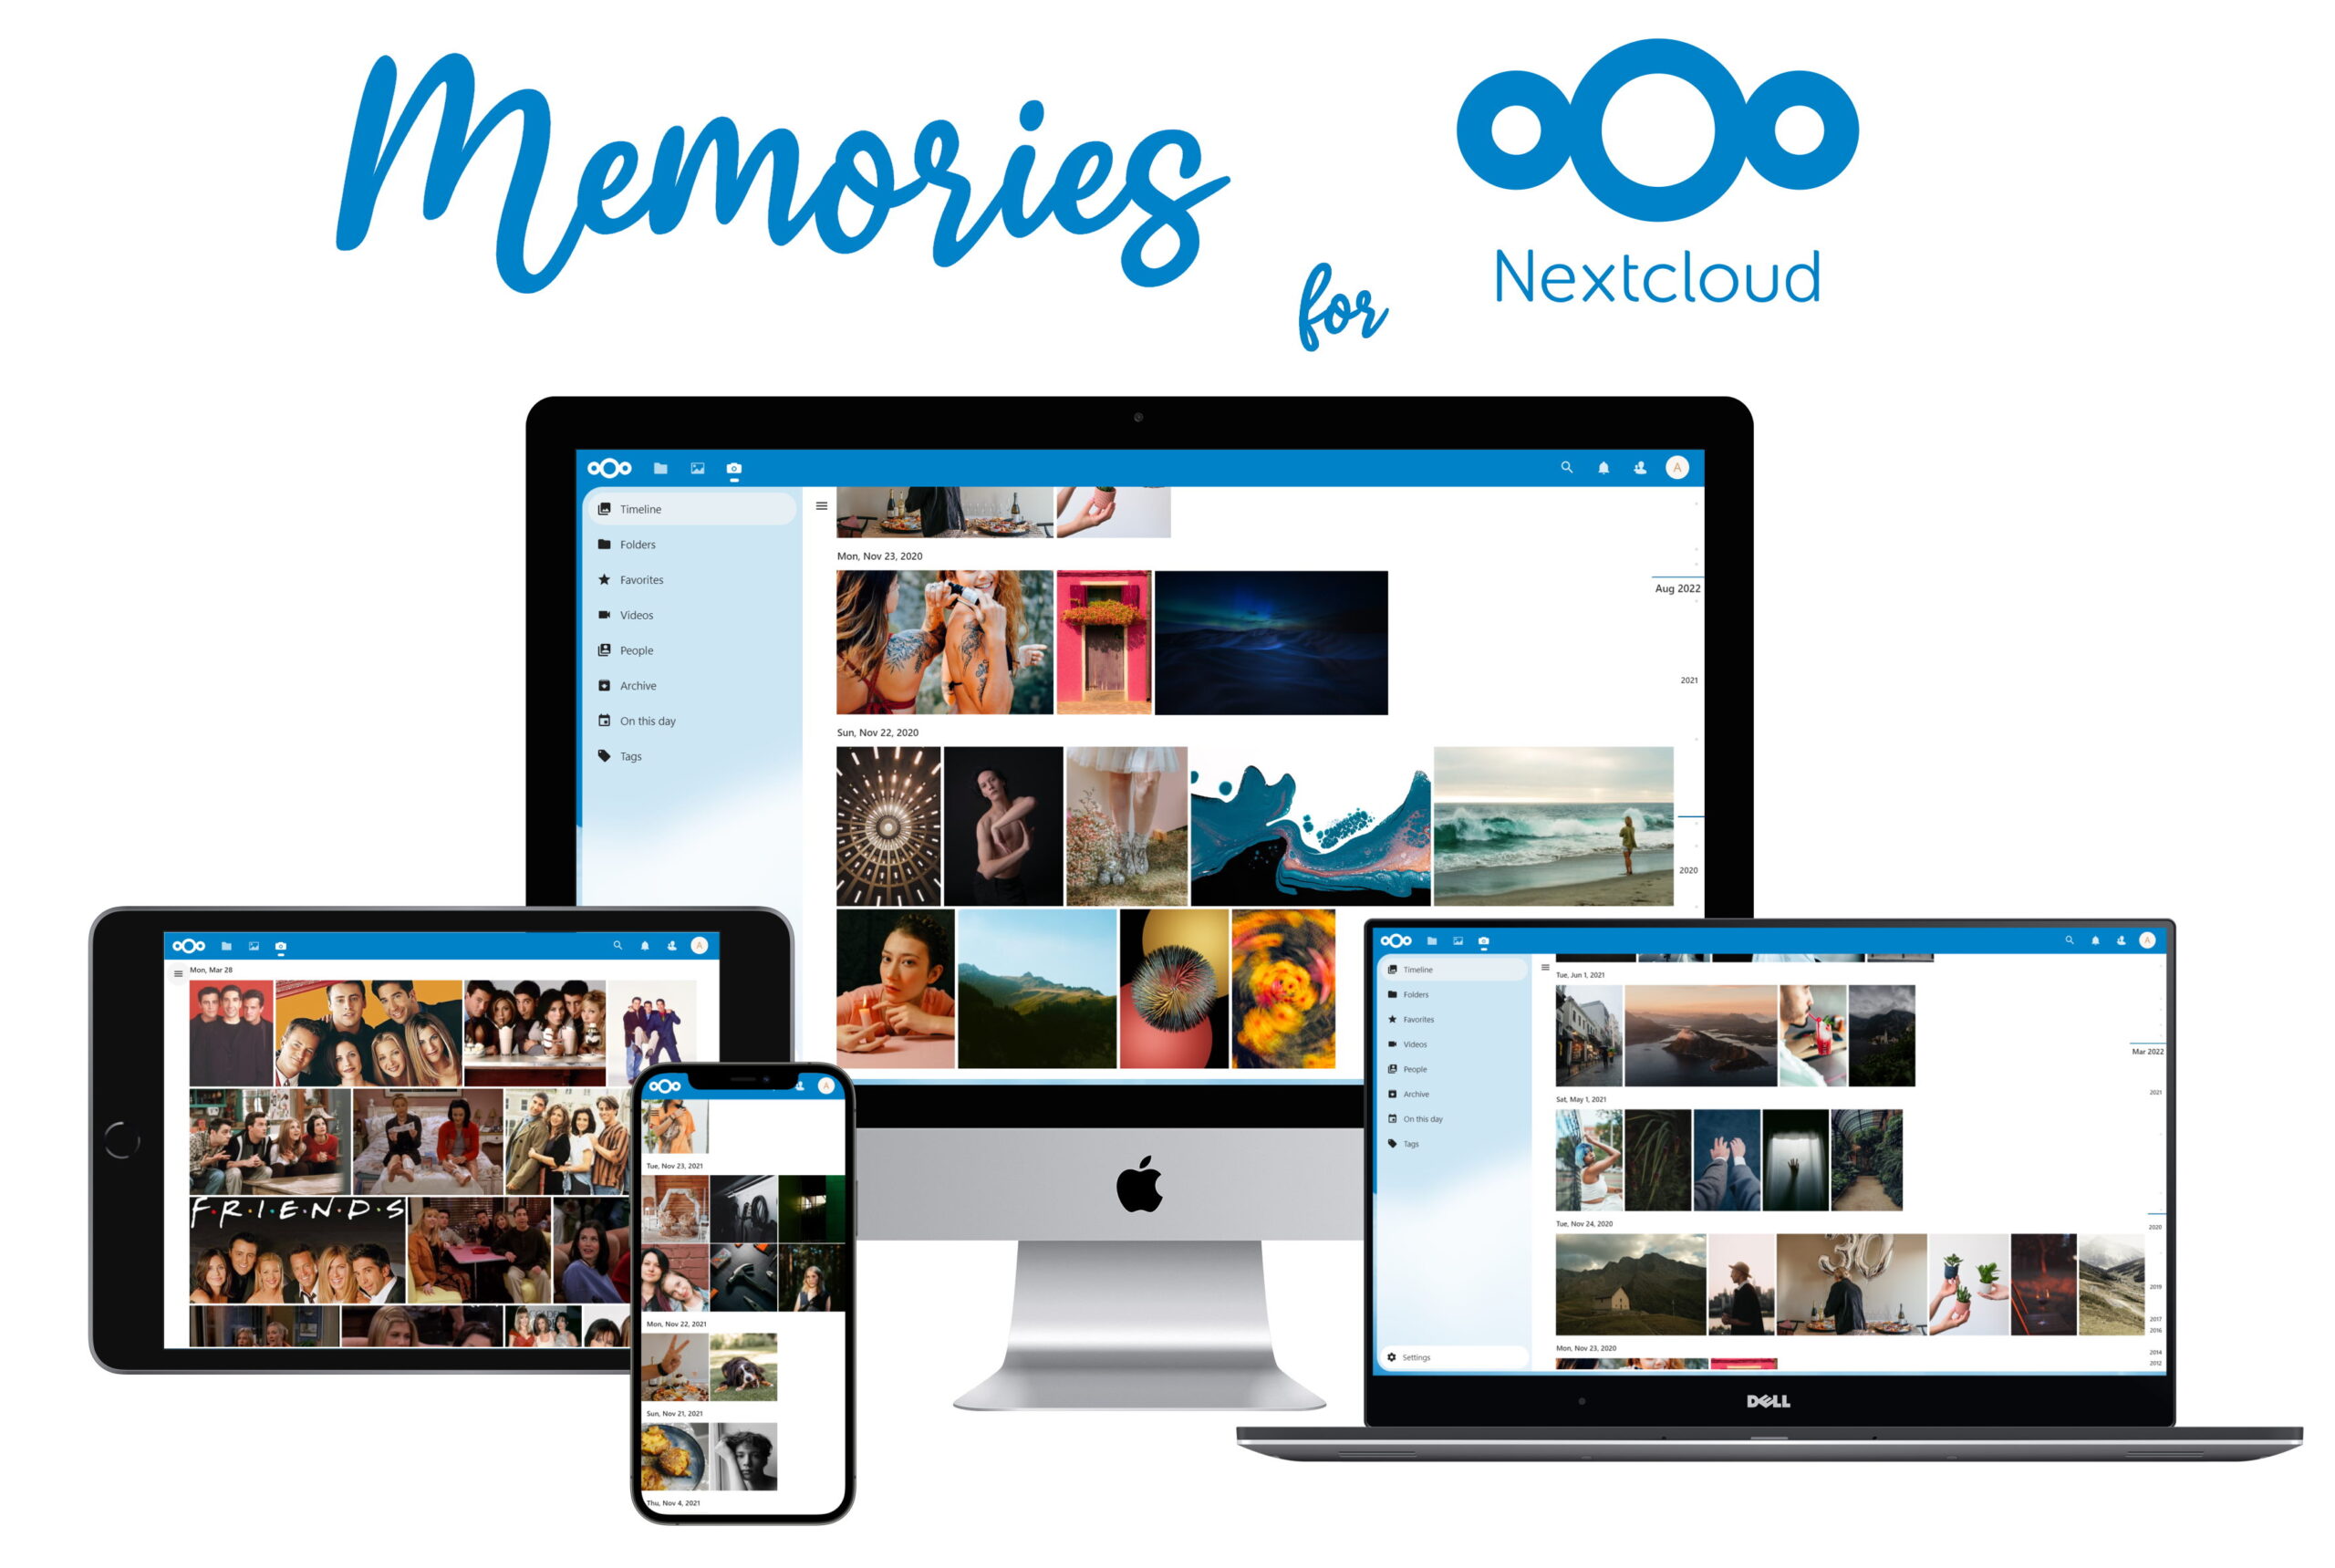 Nextcloud Photo Pro Zaclys - Memories Photo Management for Nextcloud